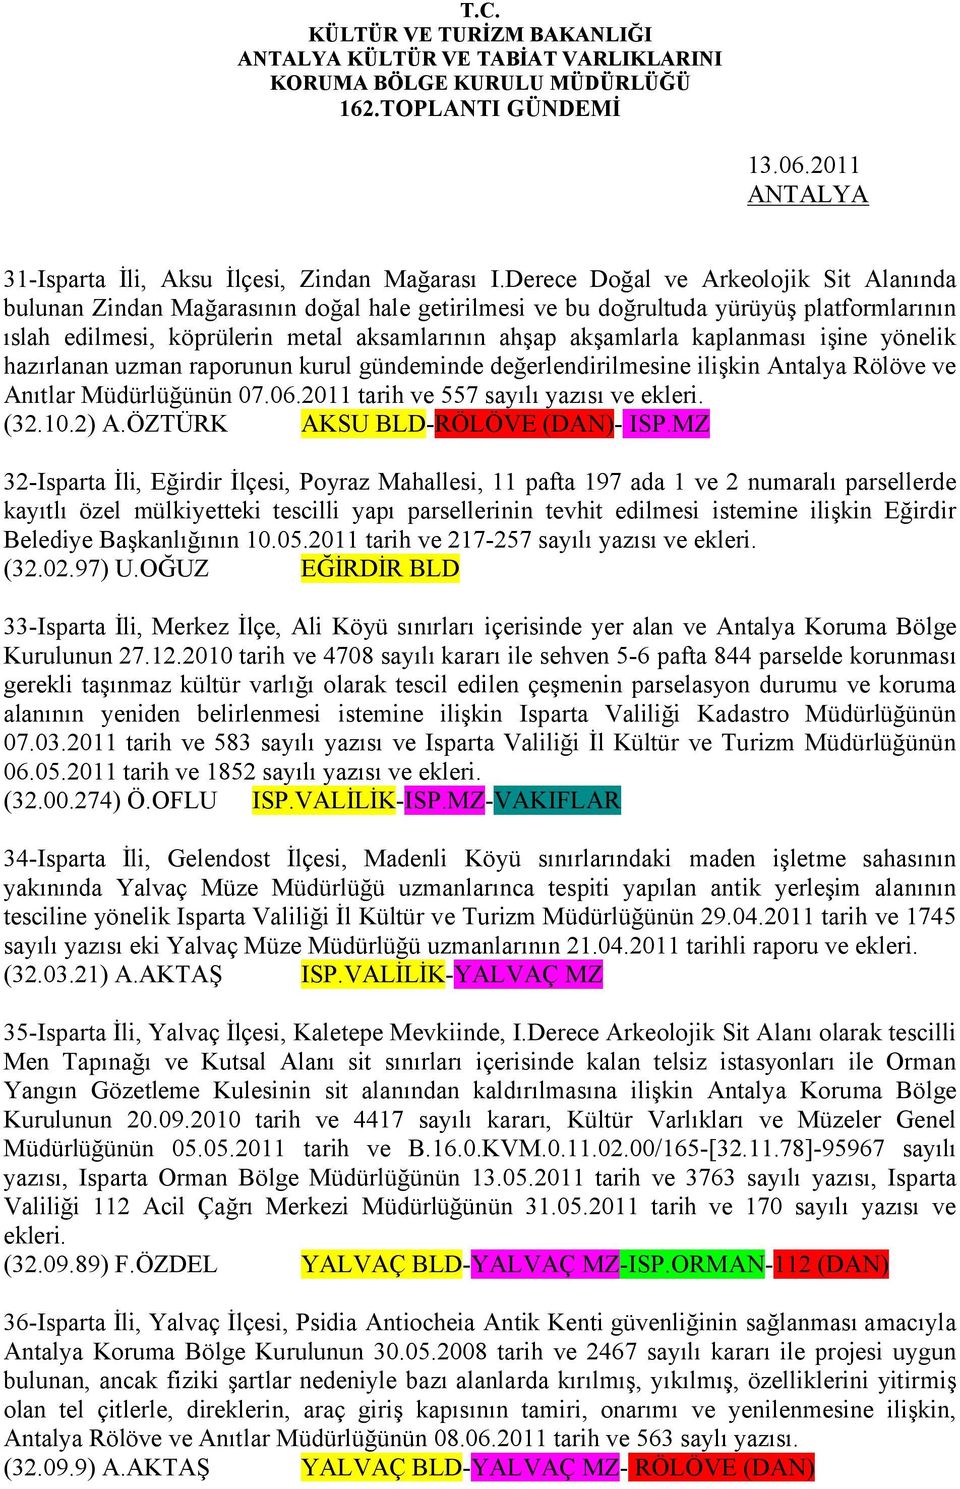 kaplanması işine yönelik hazırlanan uzman raporunun kurul gündeminde değerlendirilmesine ilişkin Antalya Rölöve ve Anıtlar Müdürlüğünün 07.06.2011 tarih ve 557 sayılı yazısı ve ekleri. (32.10.2) A.